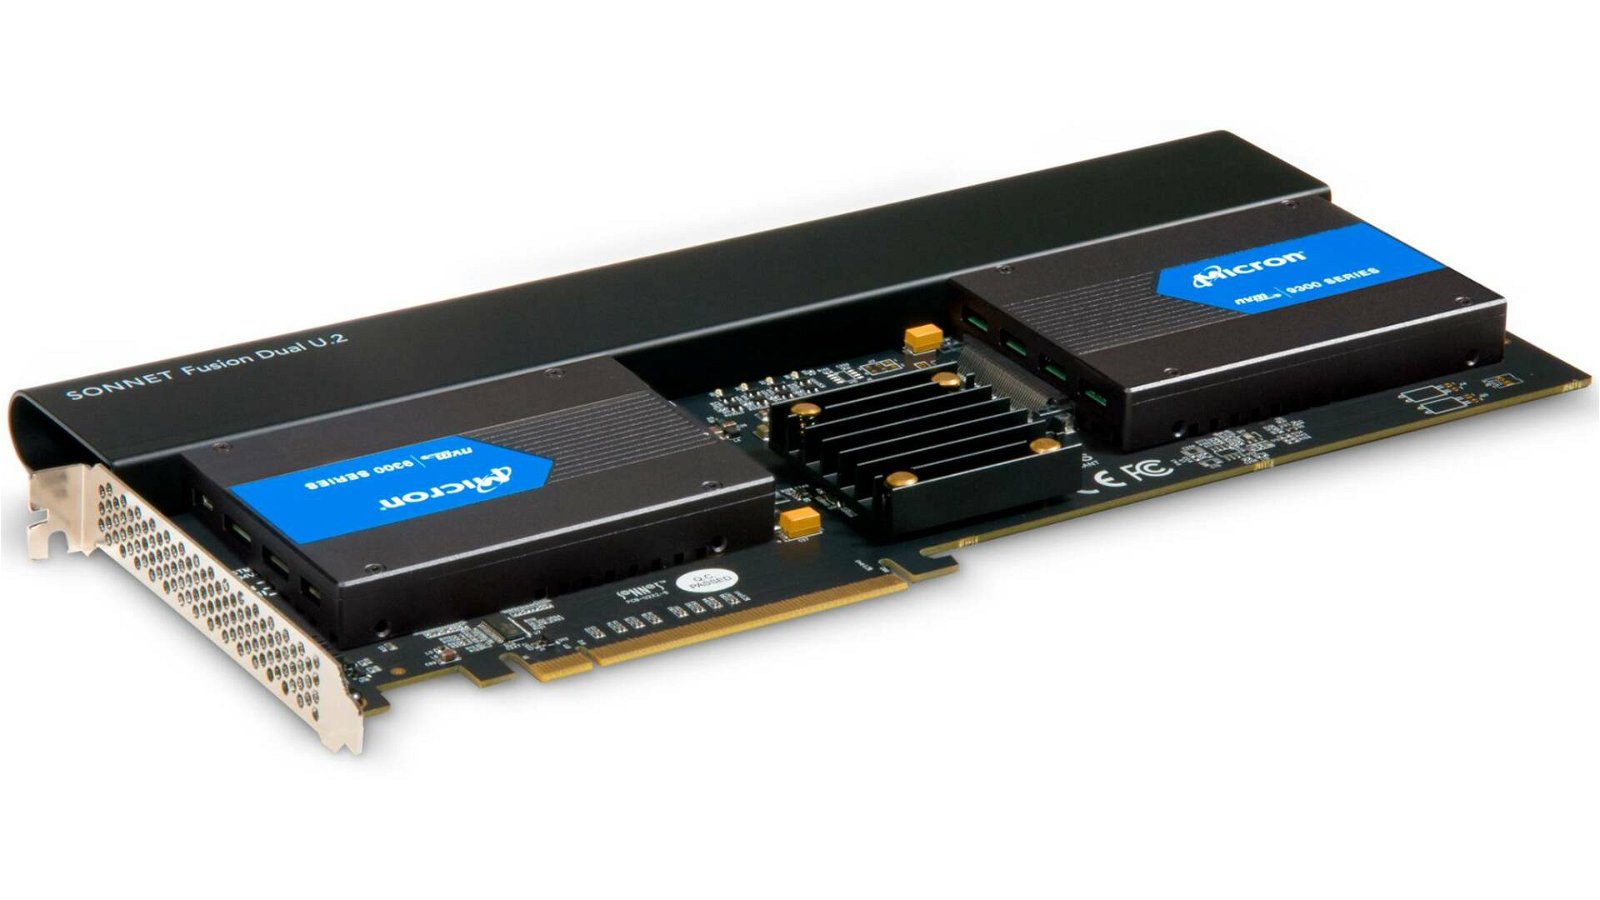 Immagine di Sonnet Fusion Dual U.2, il RAID di due SSD U.2 su un unico slot PCIe 3.0 diventa semplice